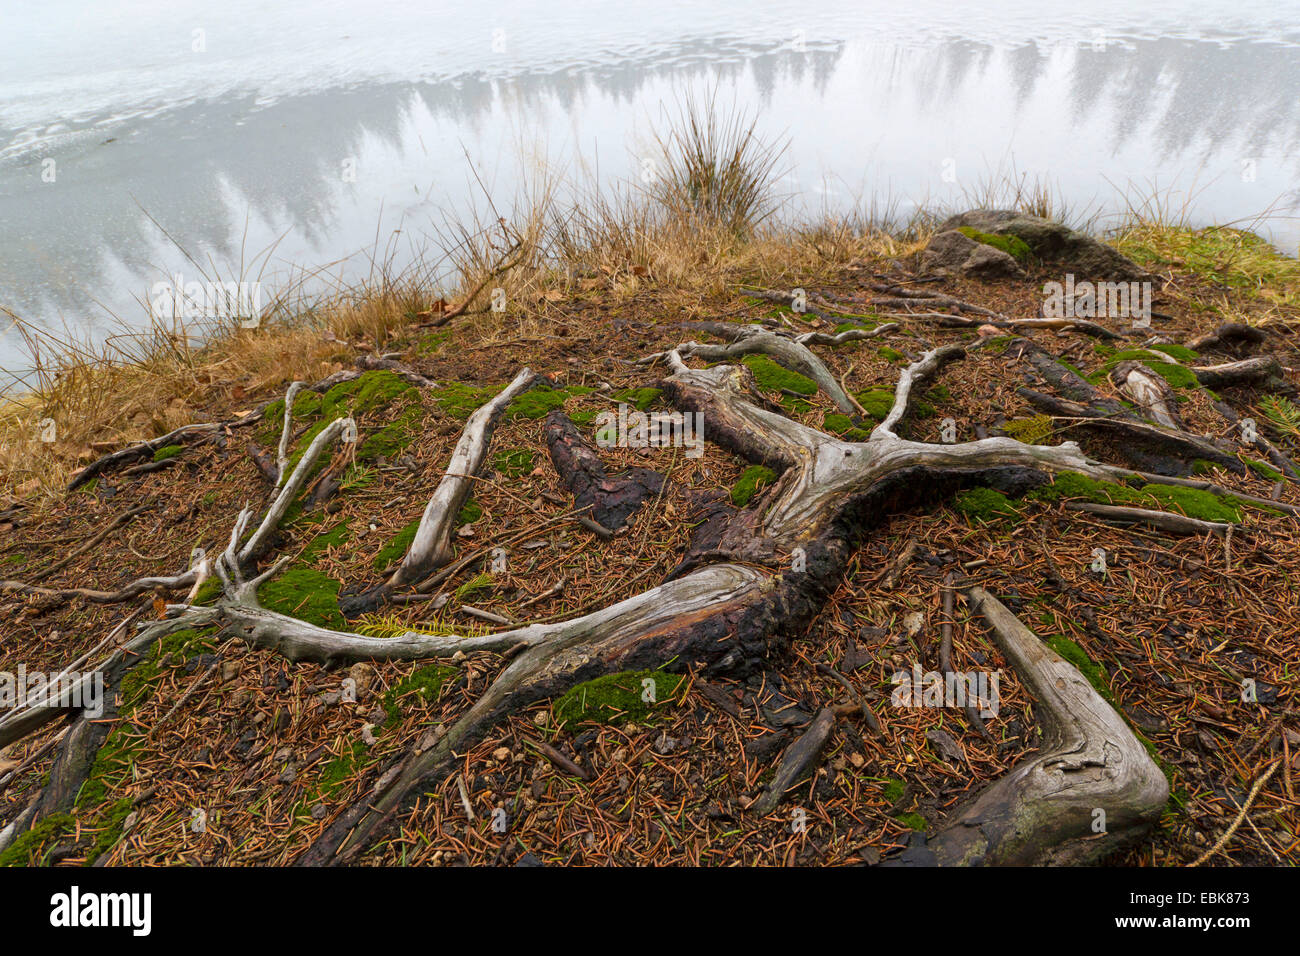 tree root on a lake shore, Germany, Saxony Stock Photo